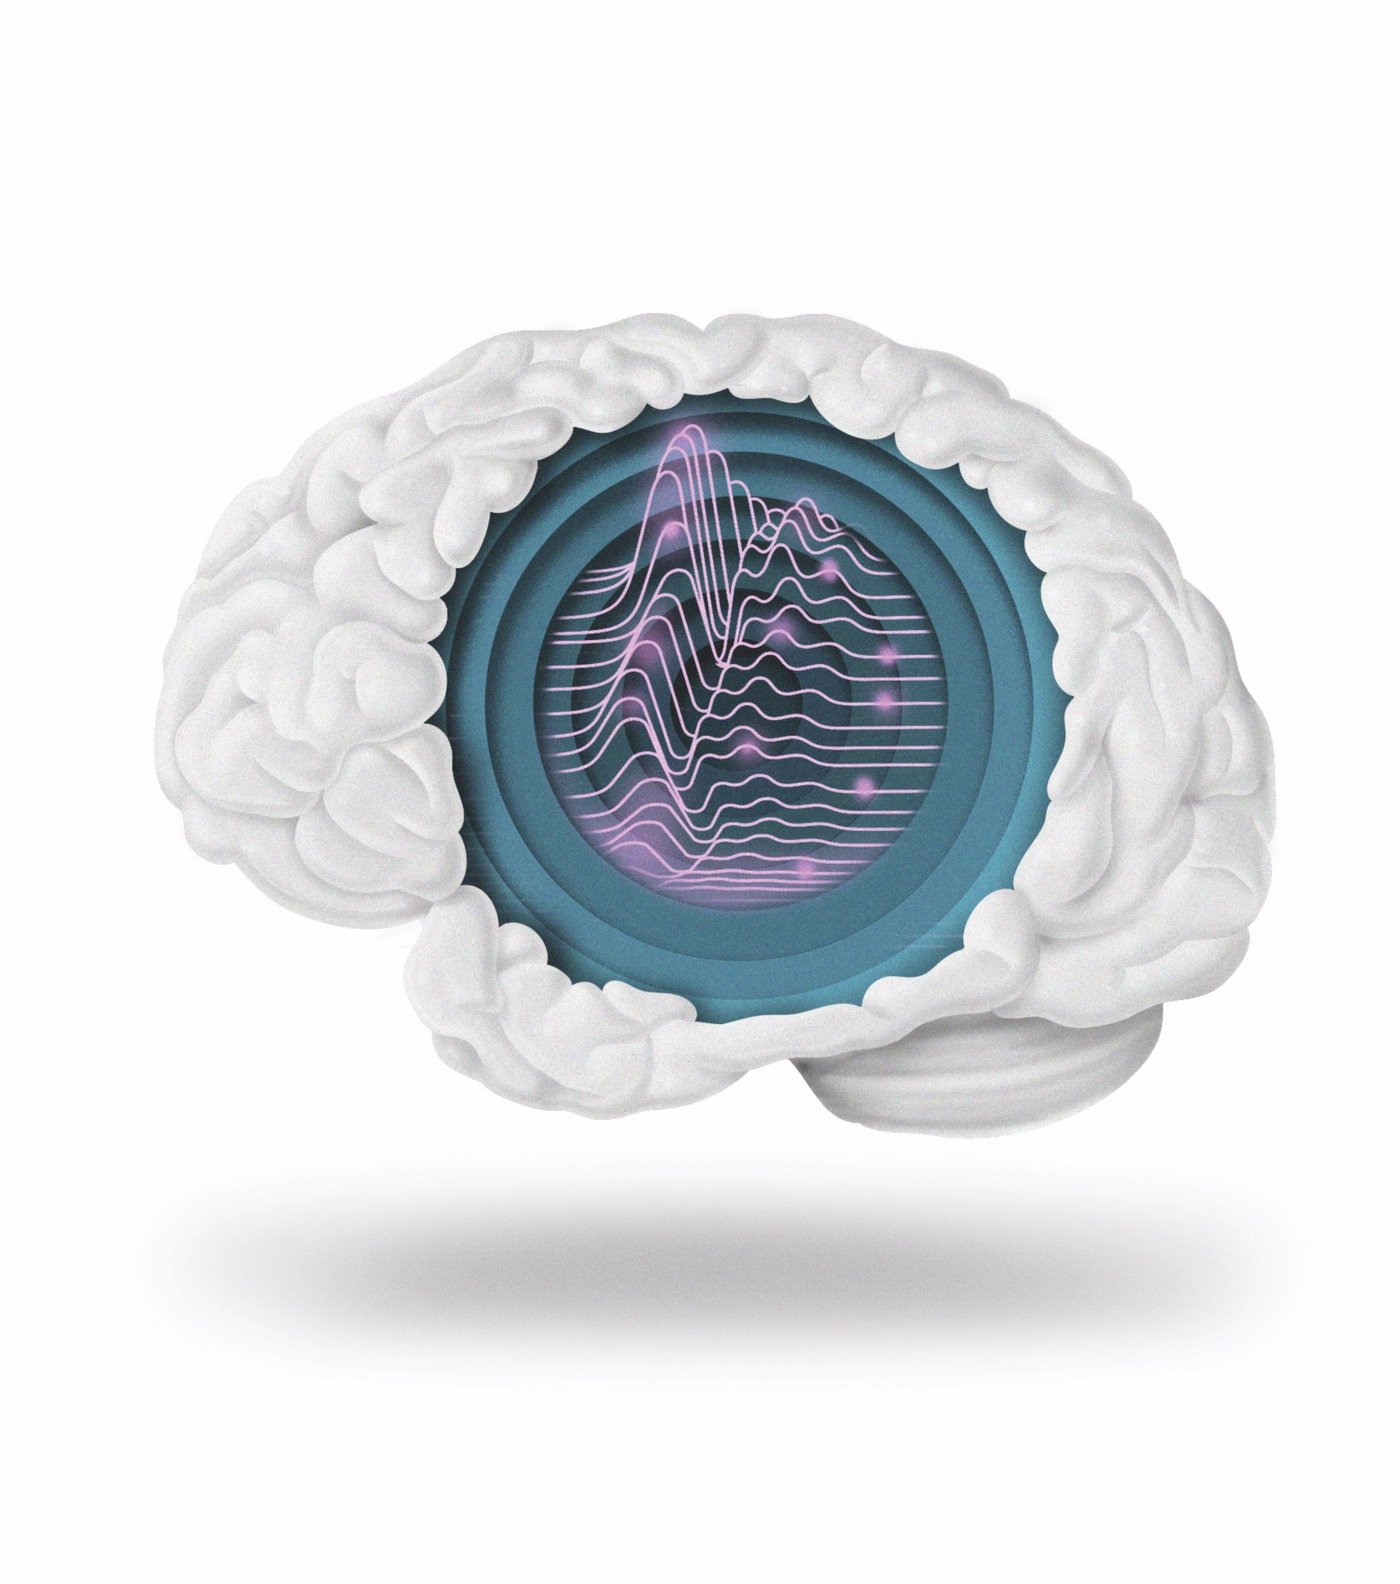 Illustration des Gehirns mit Wellen und blinkenden Punkten im Inneren.